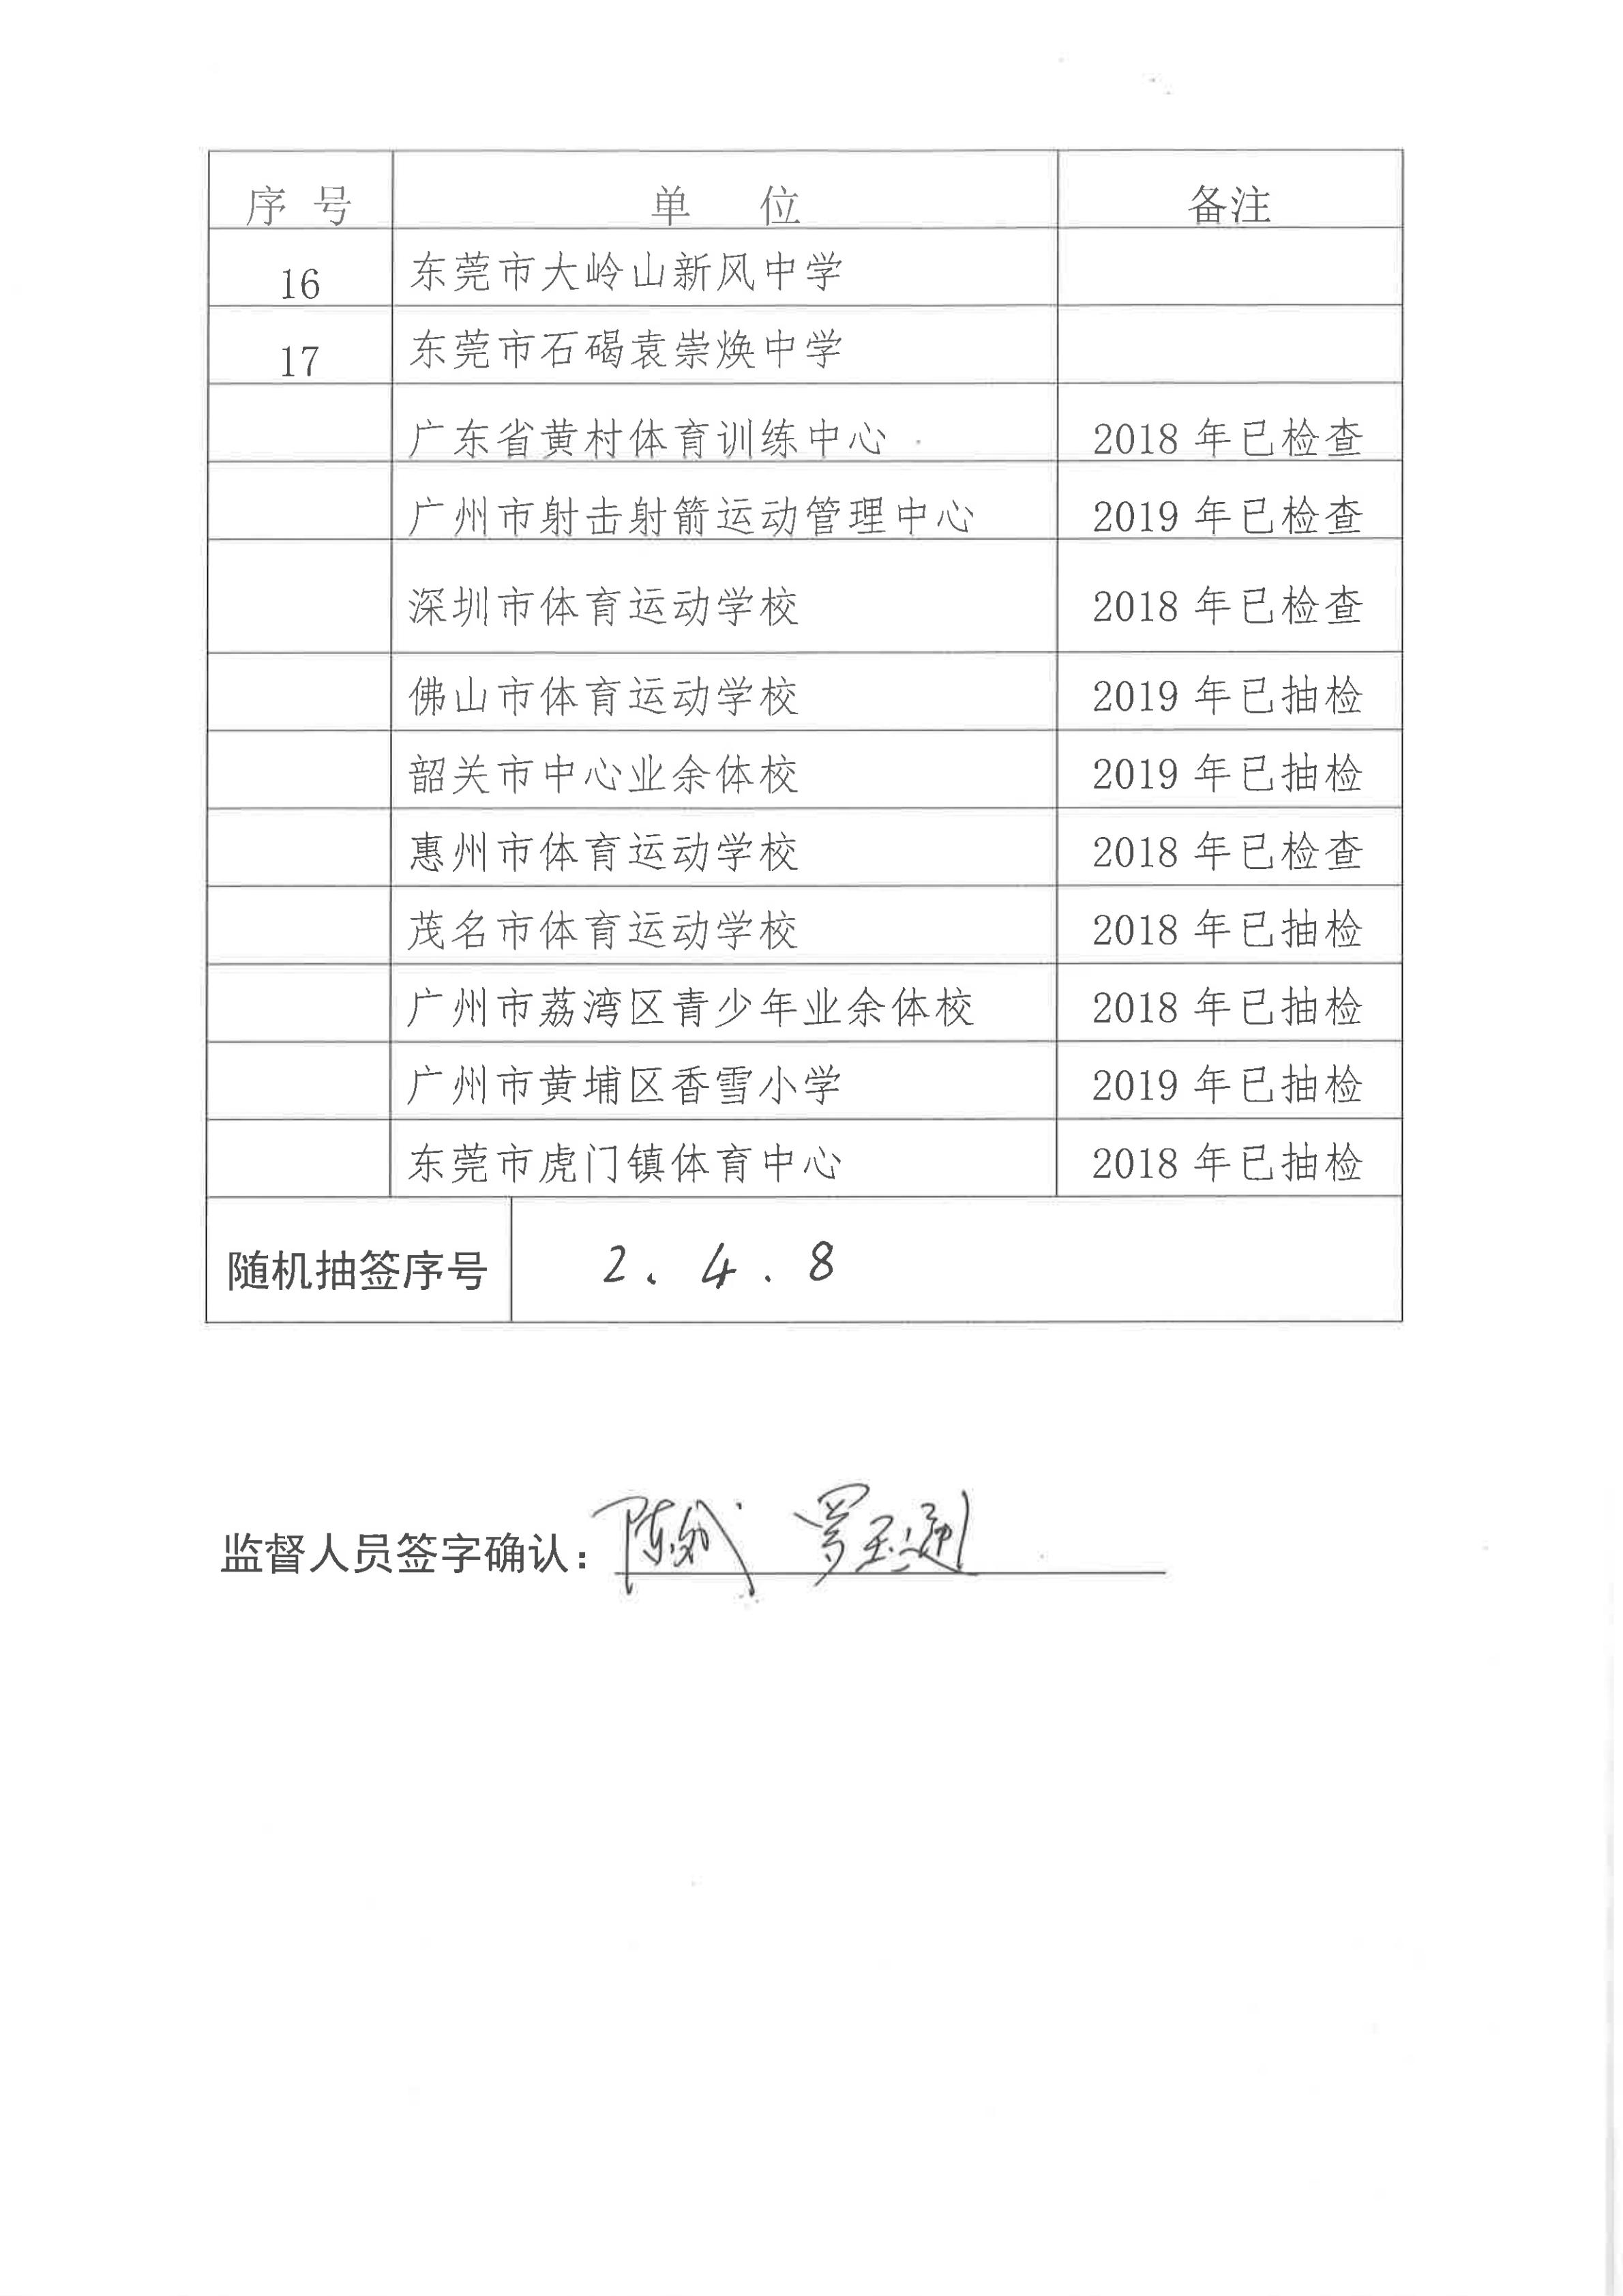 广东省射击竞技体育运动“双随机一公开”随机抽签情况统计（2020年）_01.jpg